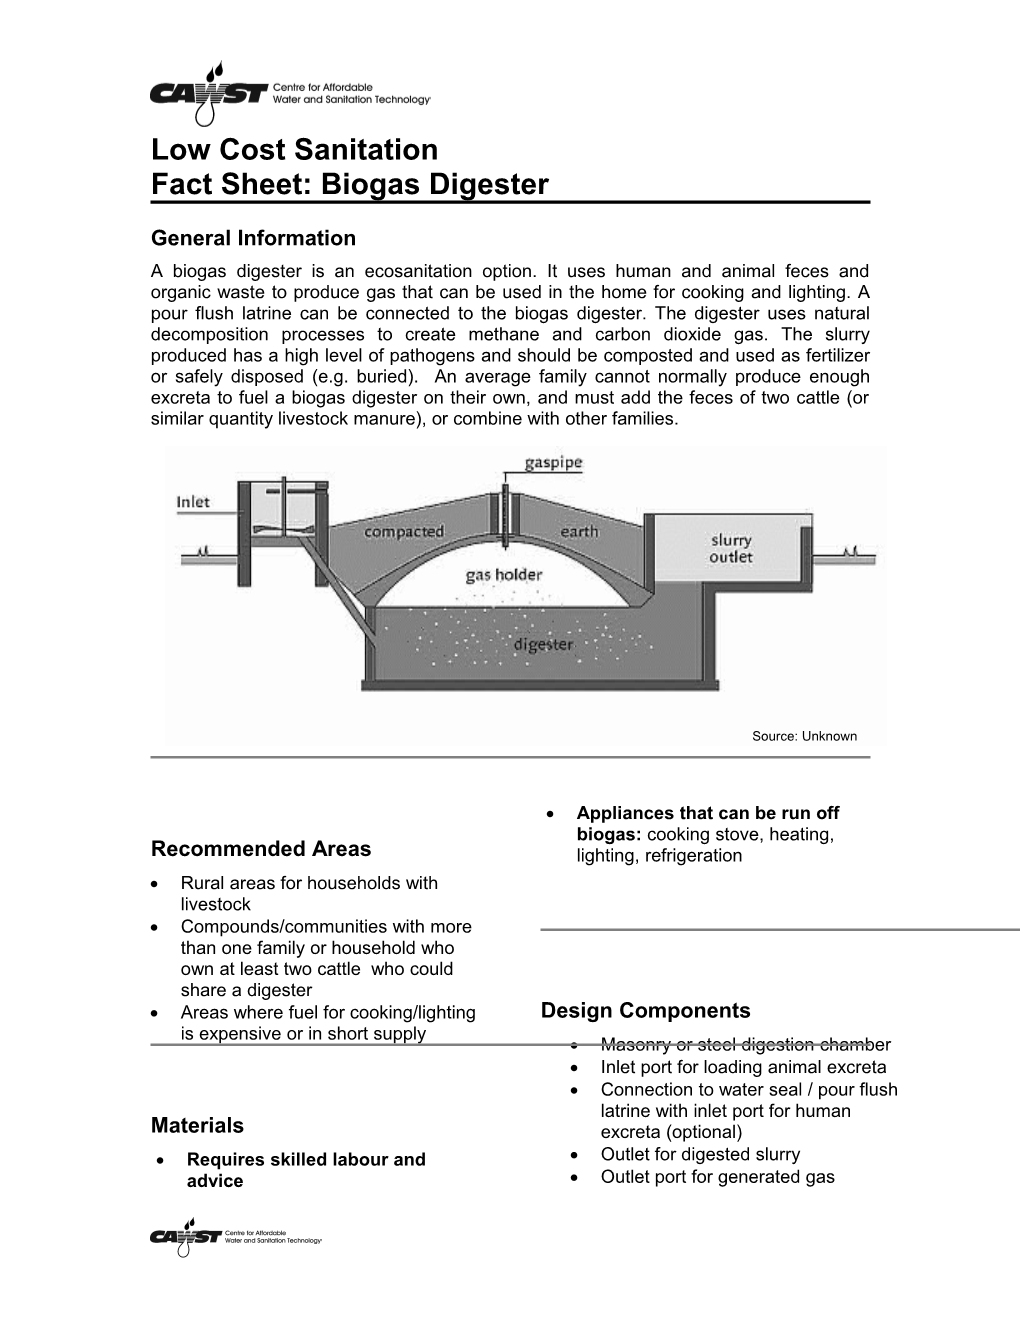 Fact Sheet: Biogas Digester